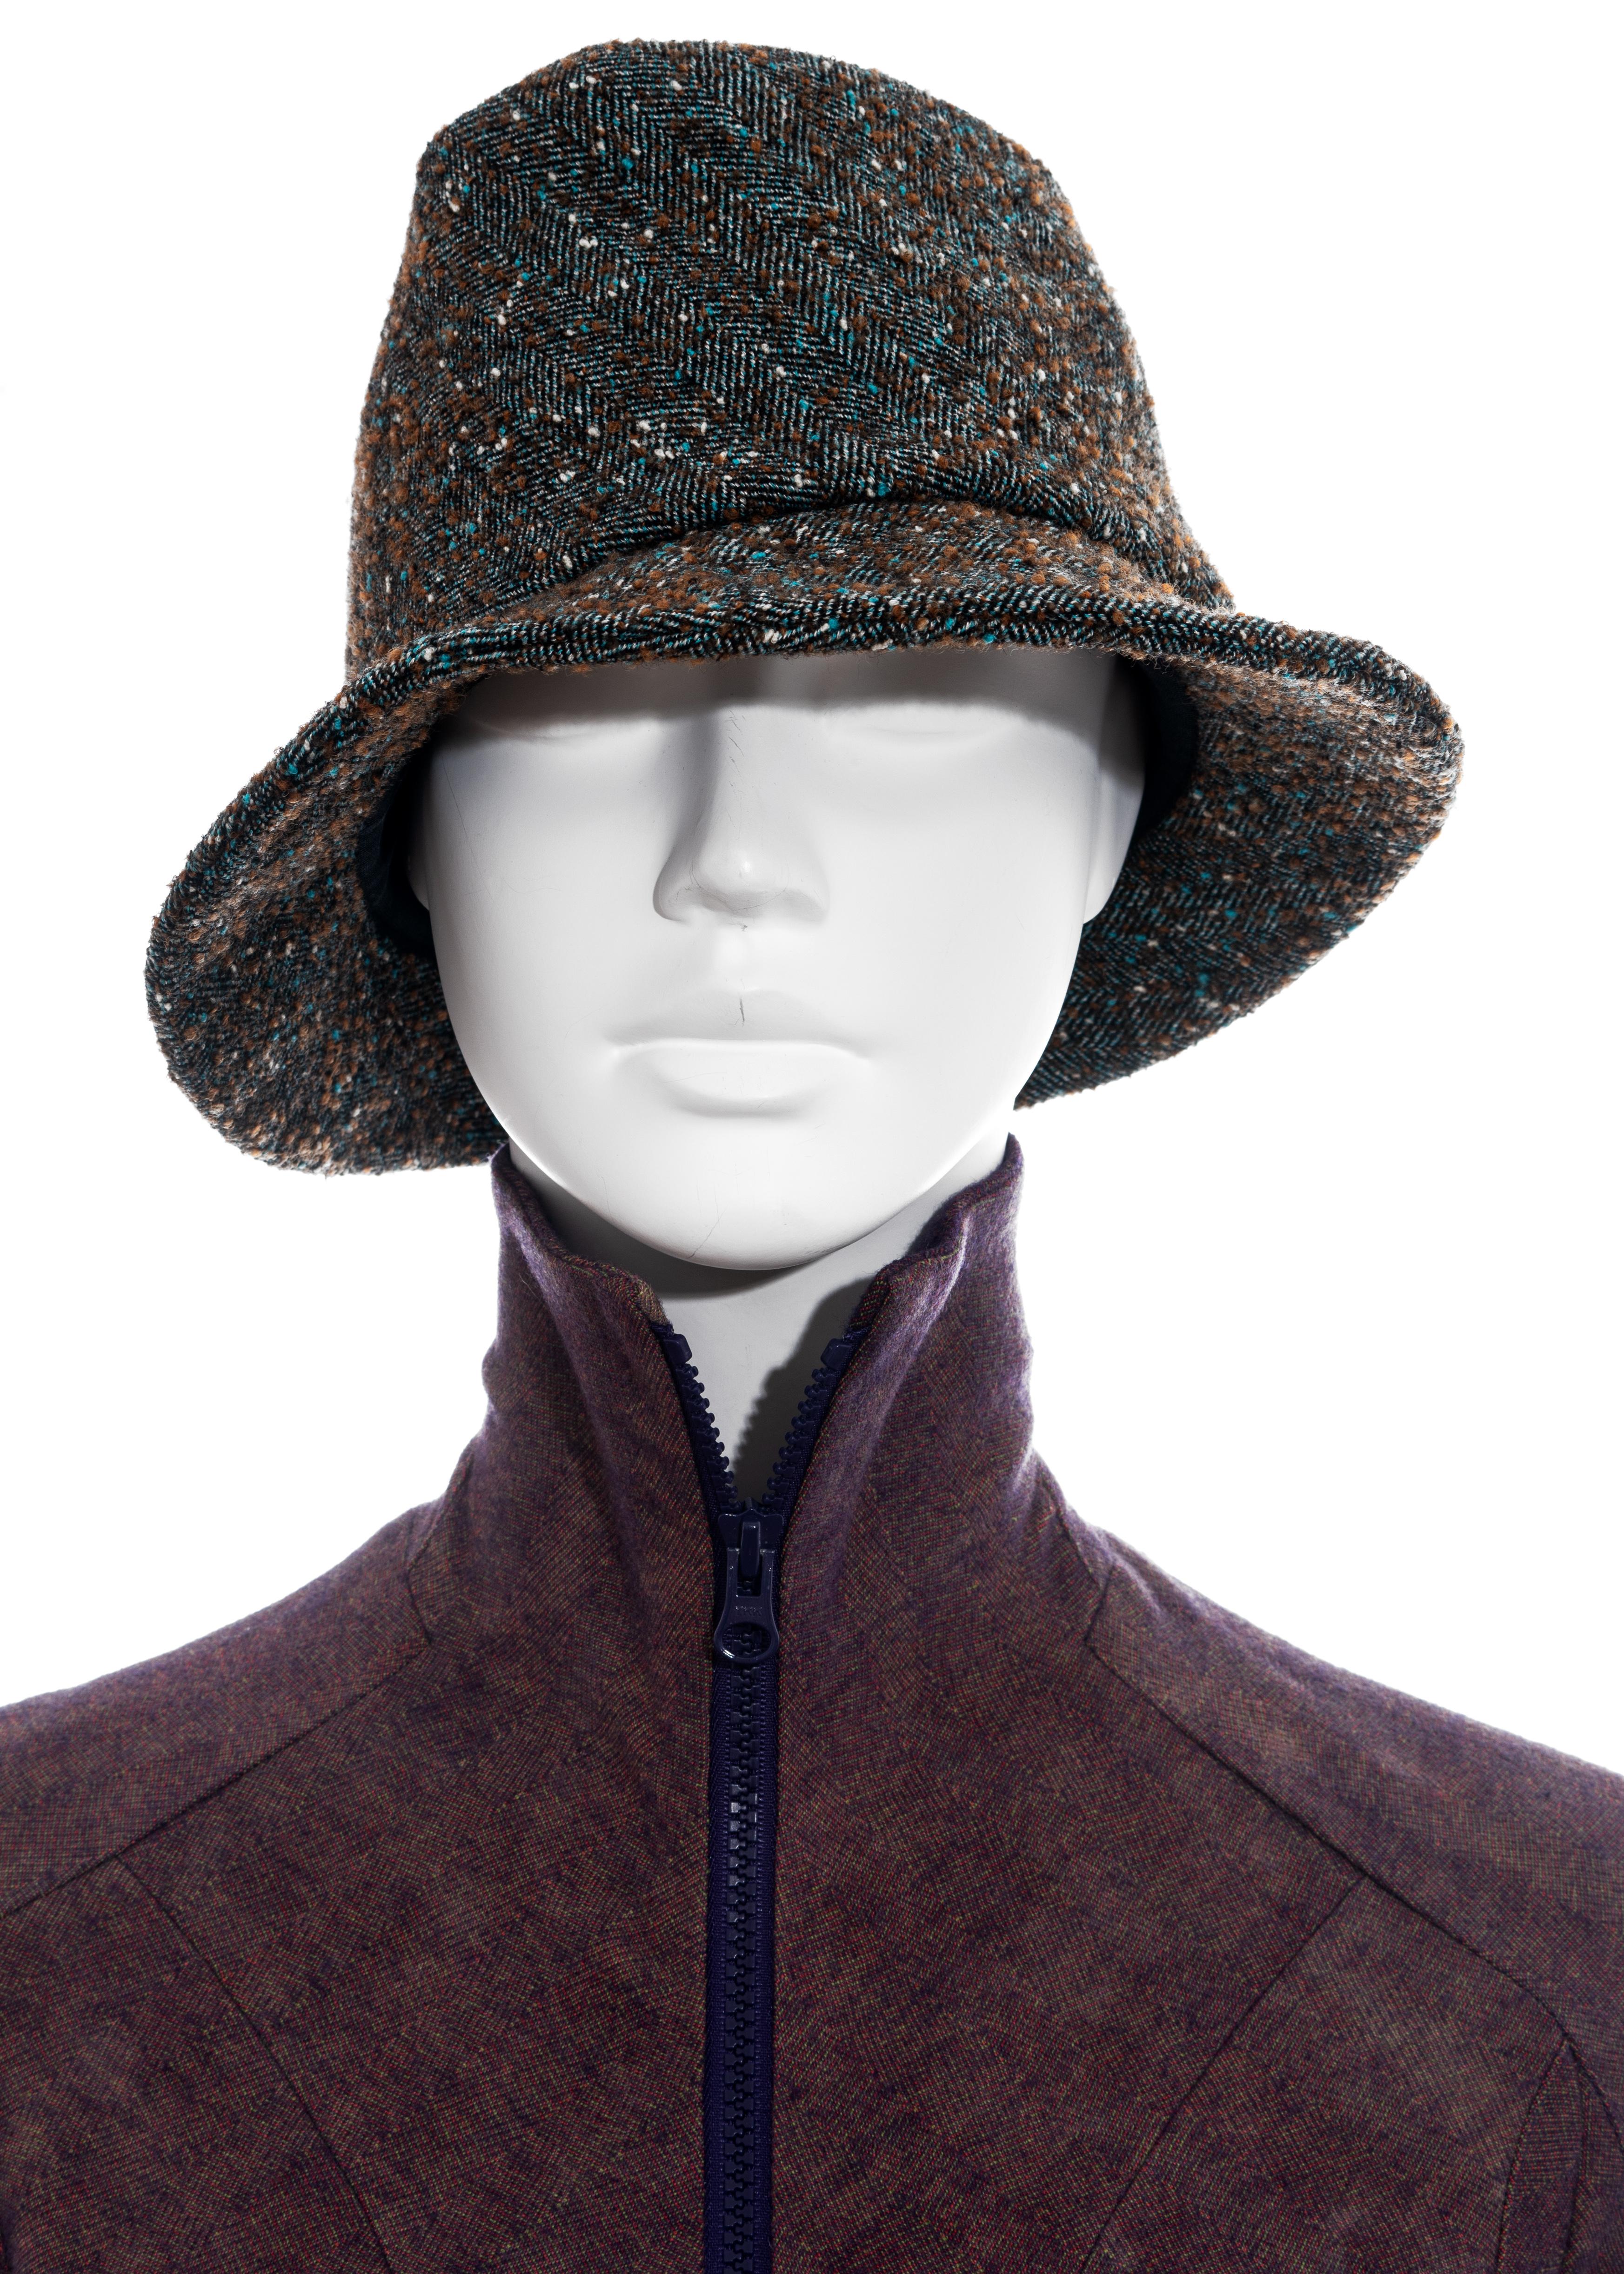 Noir Tailleur pantalon et chapeau en tweed de laine multicolore Junya Watanabe, A/H 2004 en vente